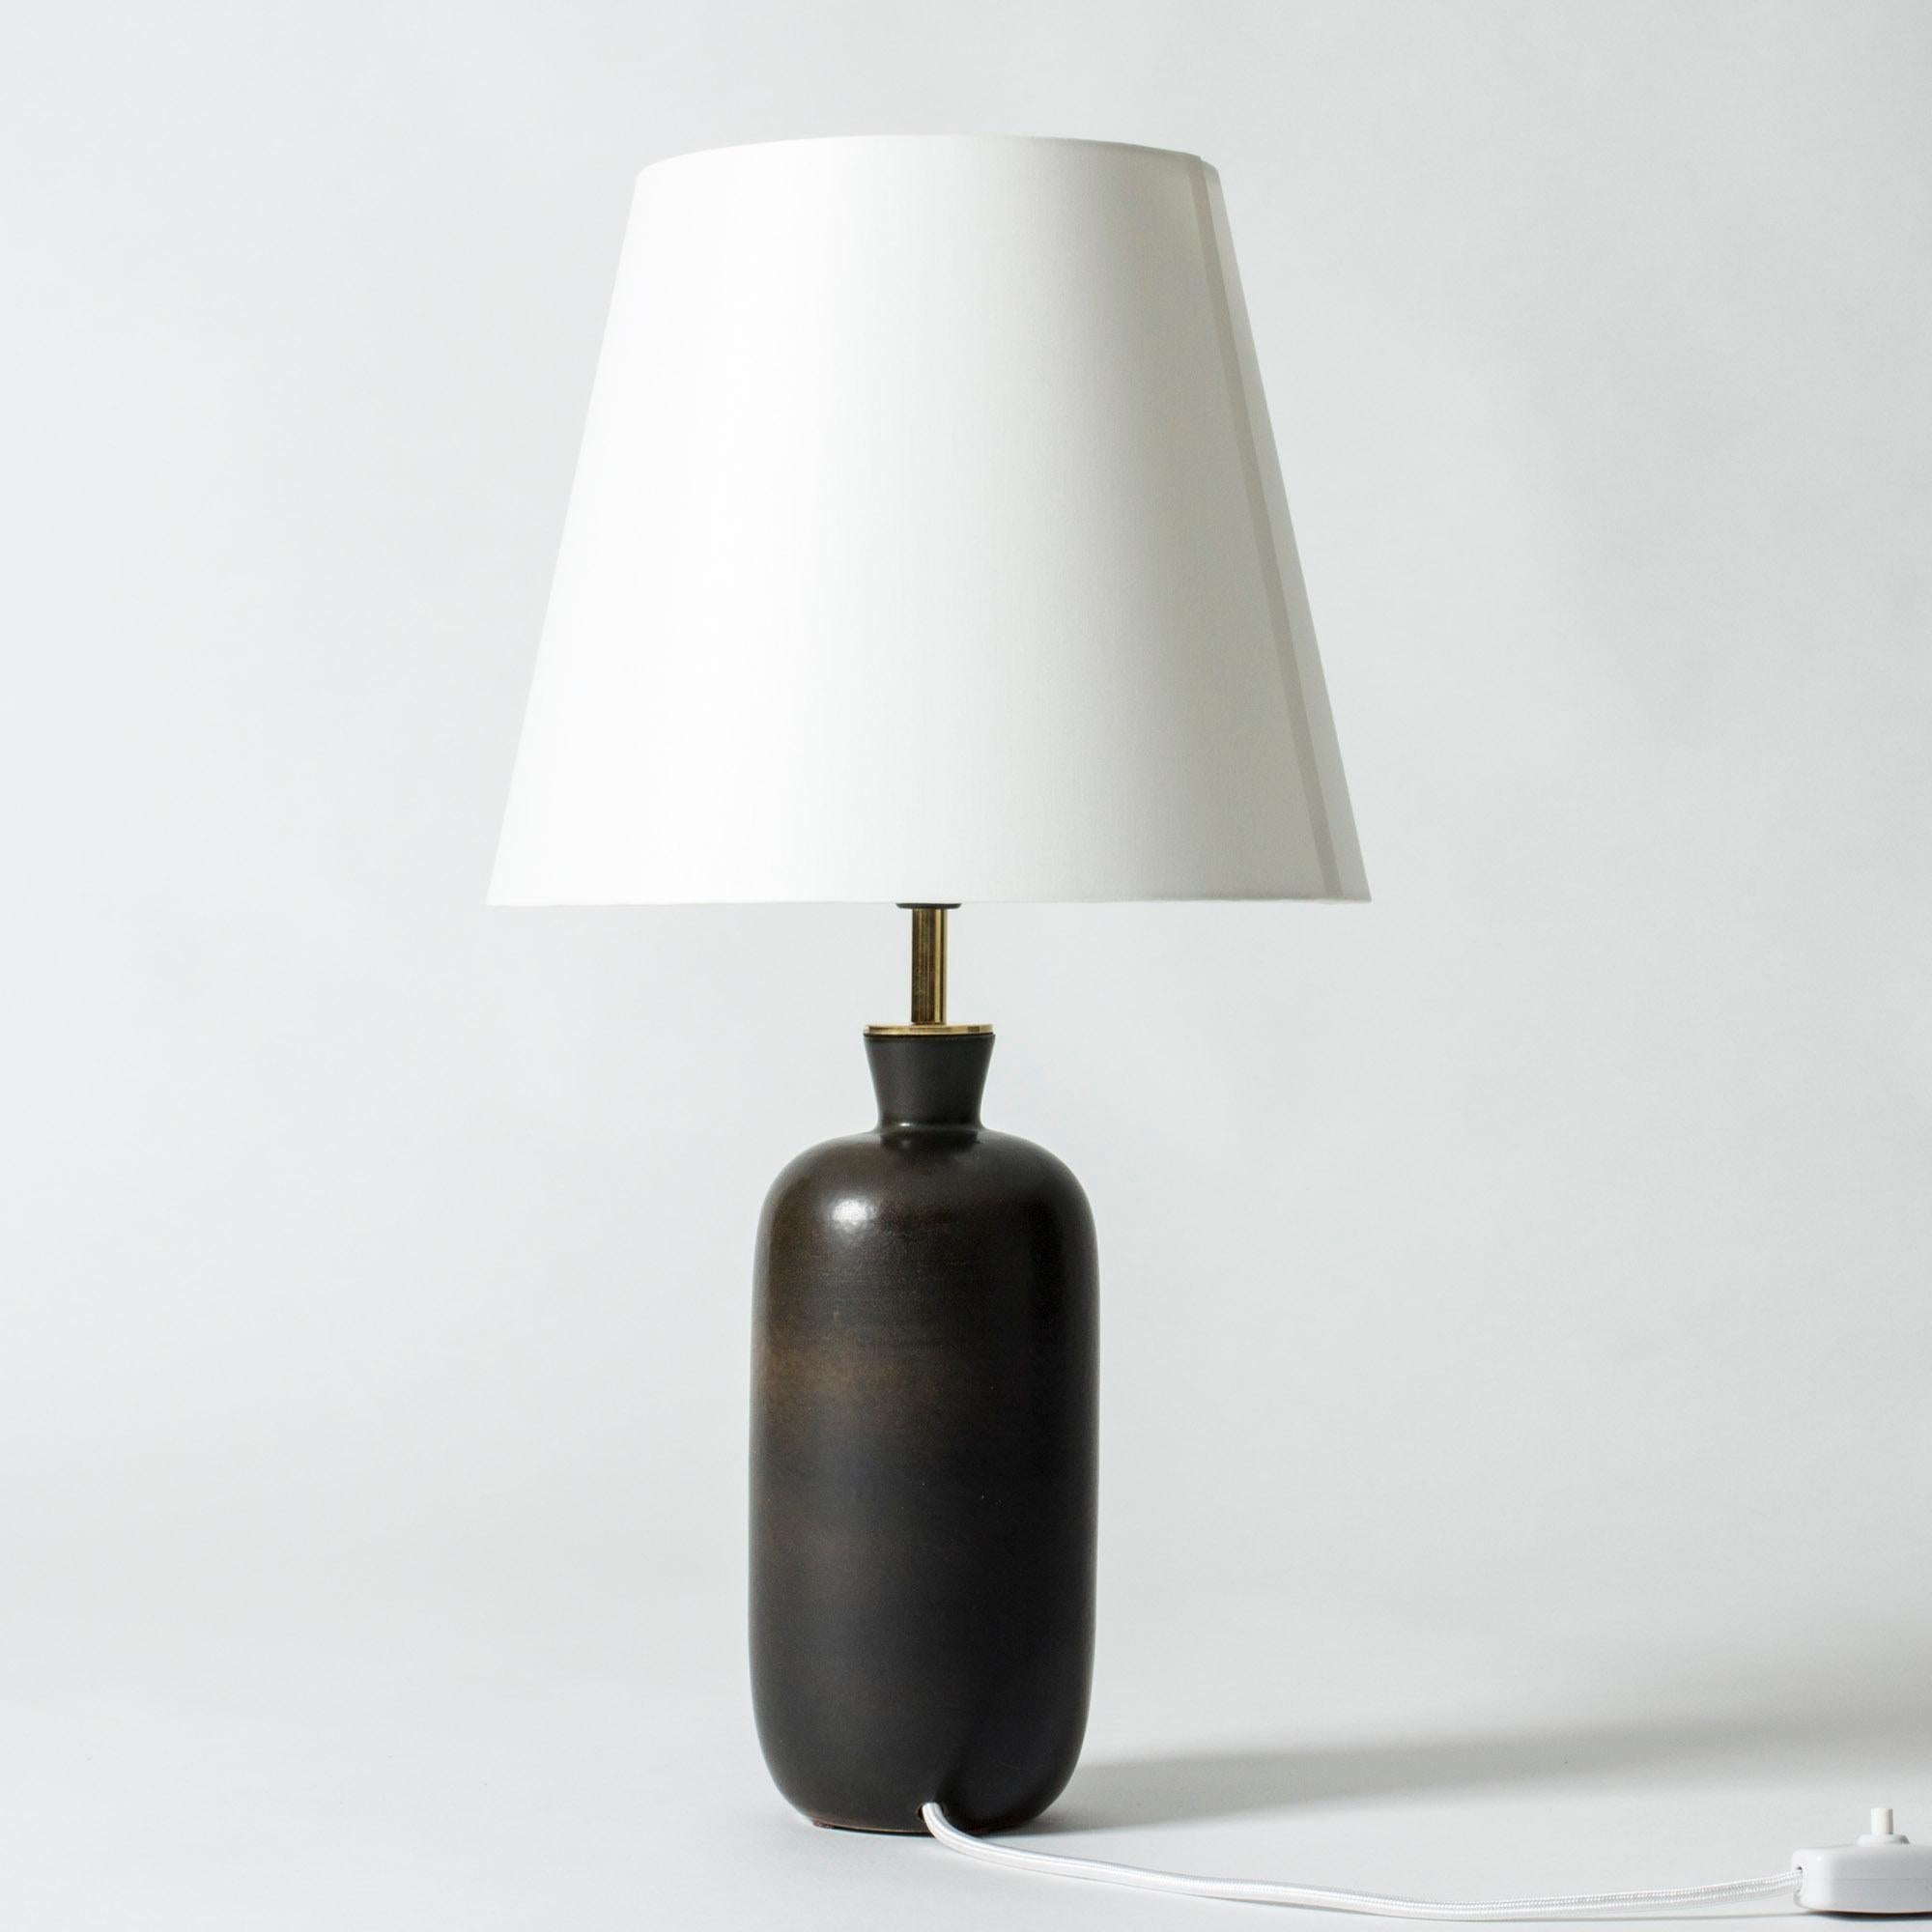 Élégante lampe de table de Carl-Harry Stålhane, avec une base en grès de forme lisse et stricte. Glacé brun foncé avec de belles nuances subtiles.